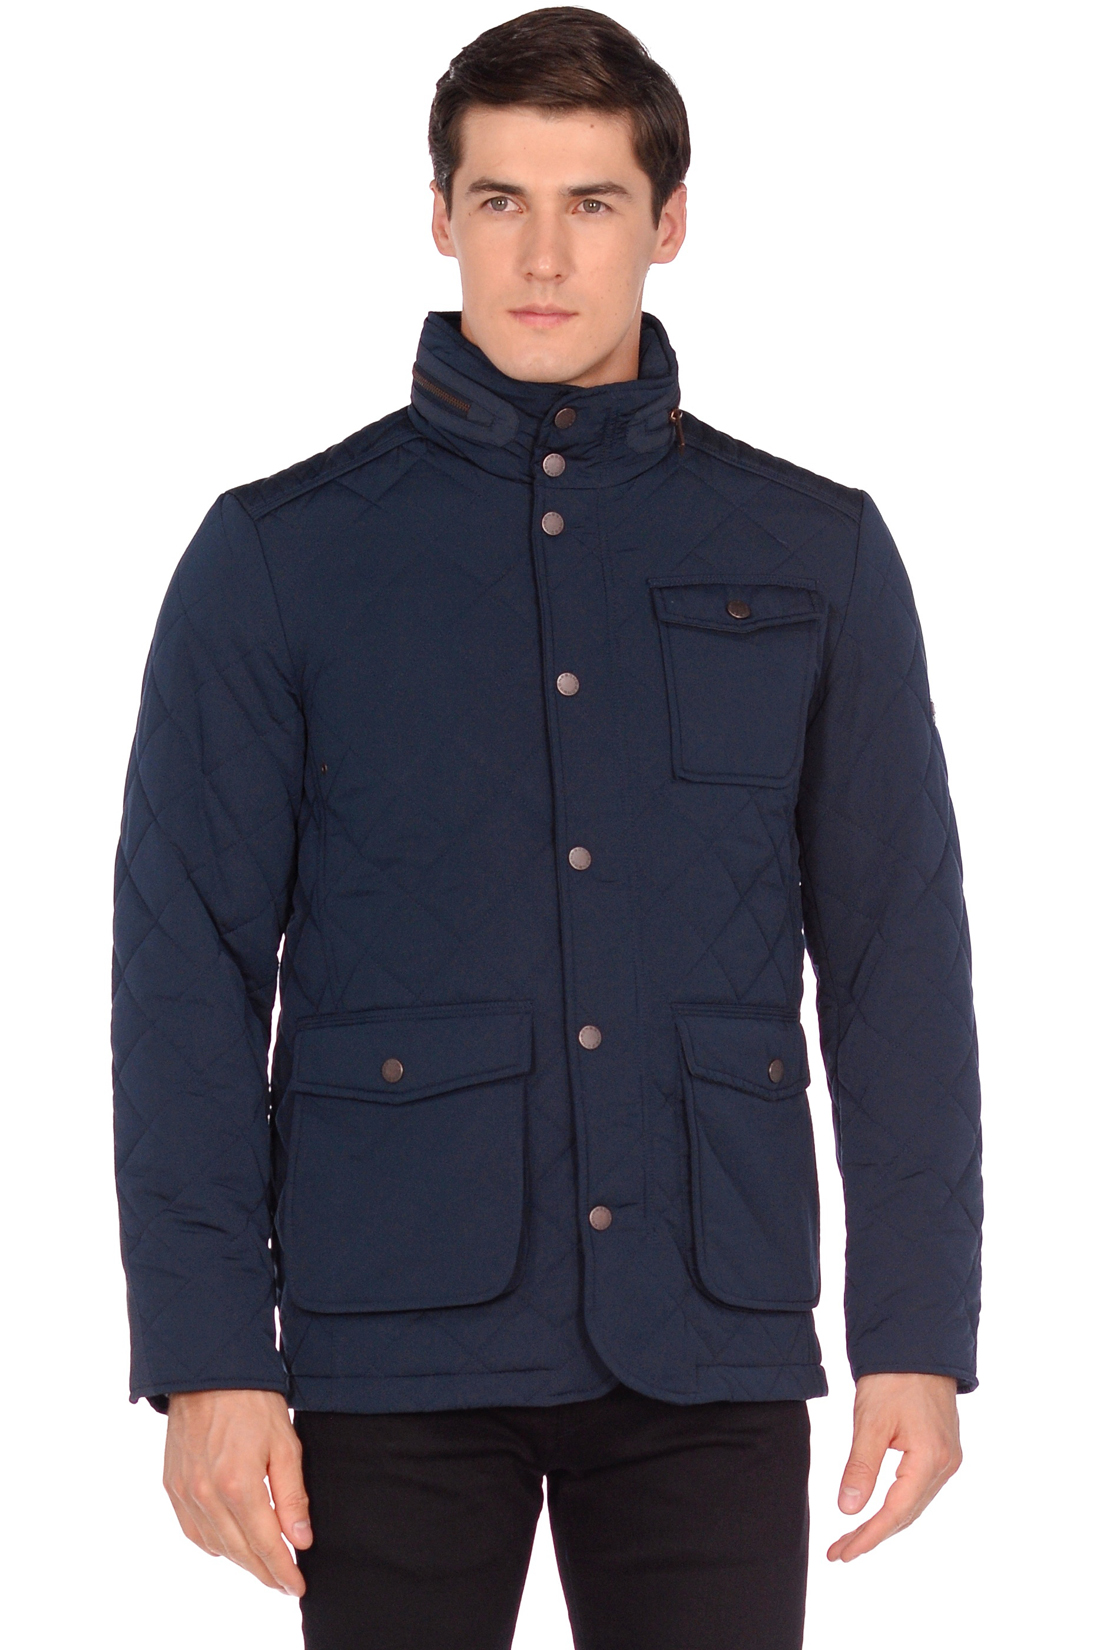 Стёганая куртка с тремя карманами (арт. baon B538503), размер XXL, цвет синий Стёганая куртка с тремя карманами (арт. baon B538503) - фото 5